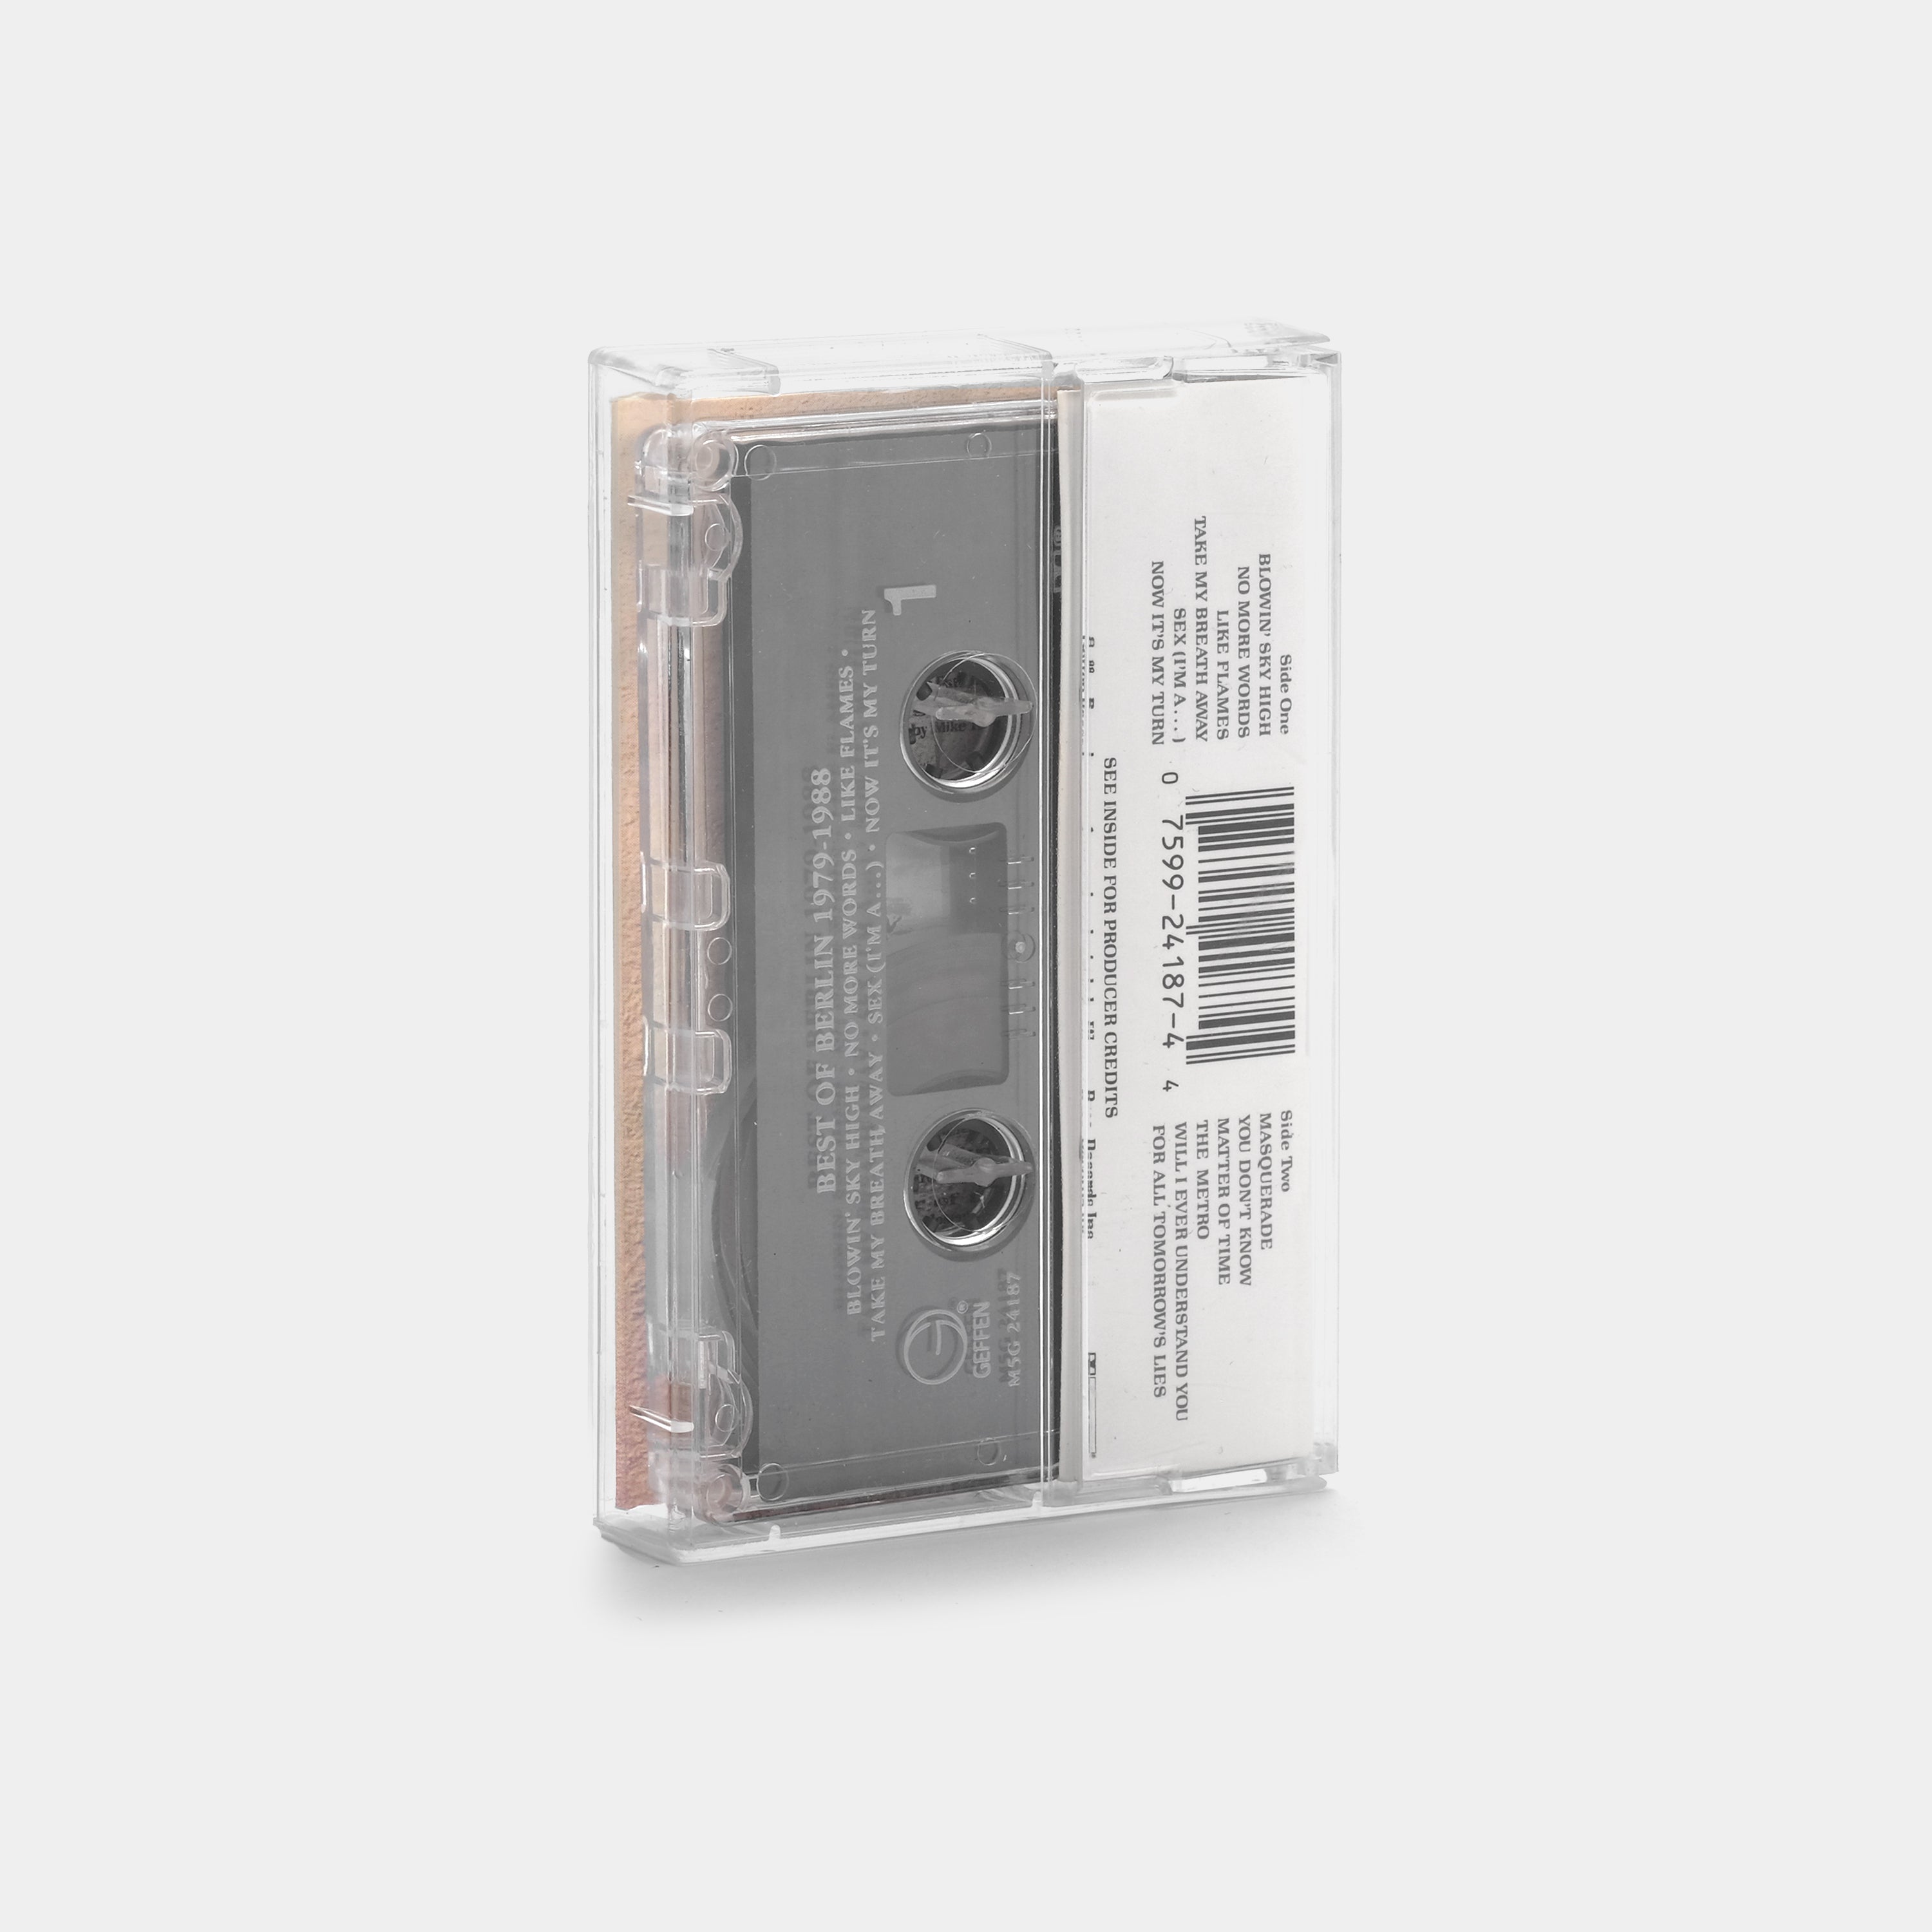 Berlin - Best Of Berlin 1979 - 1988 Cassette Tape